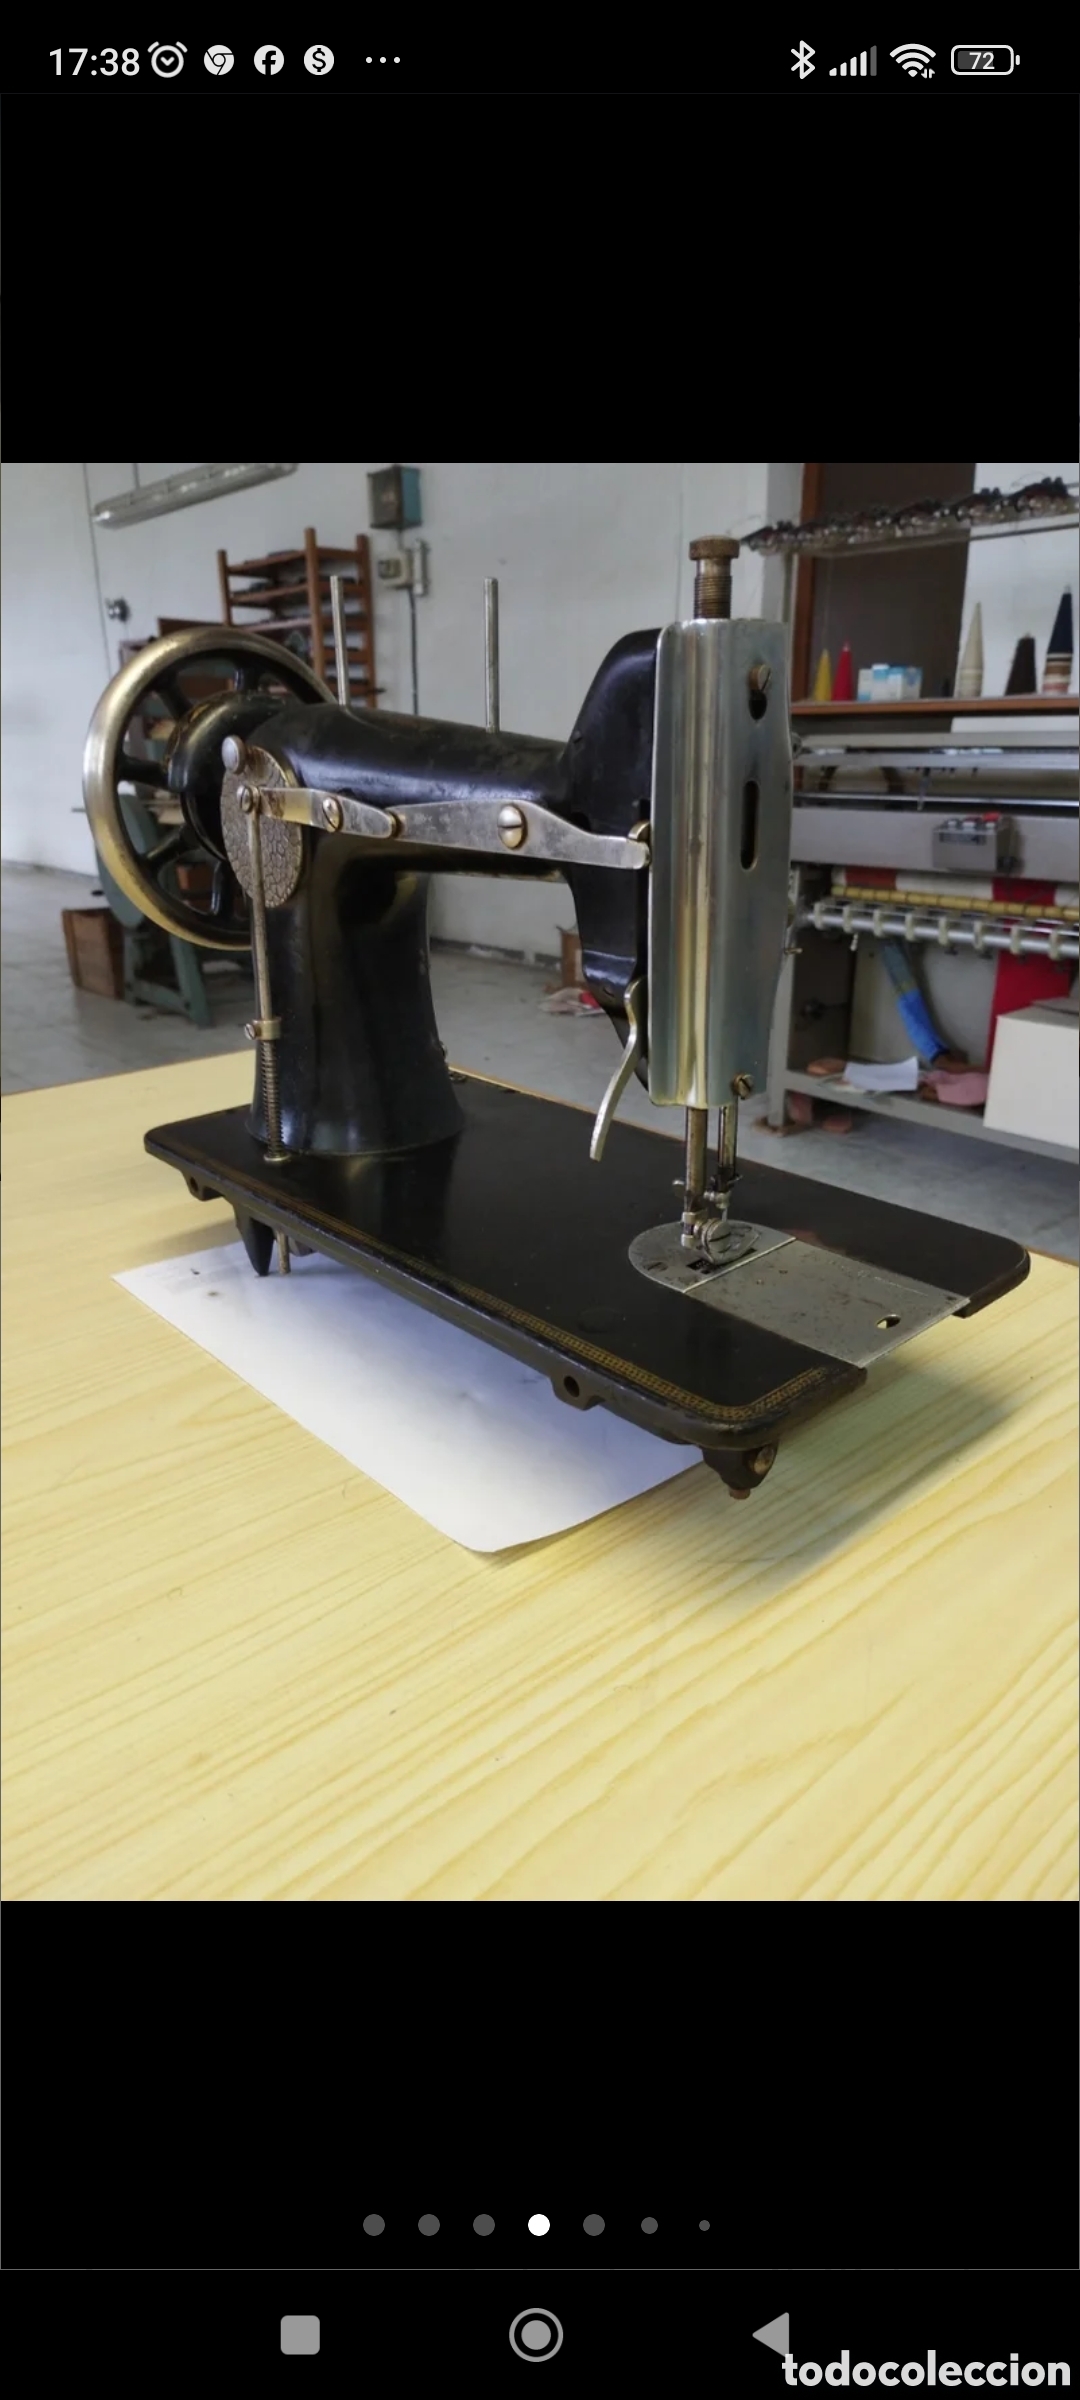 mesa máquina de coser sigma- ocasión. rebajada - Compra venta en  todocoleccion